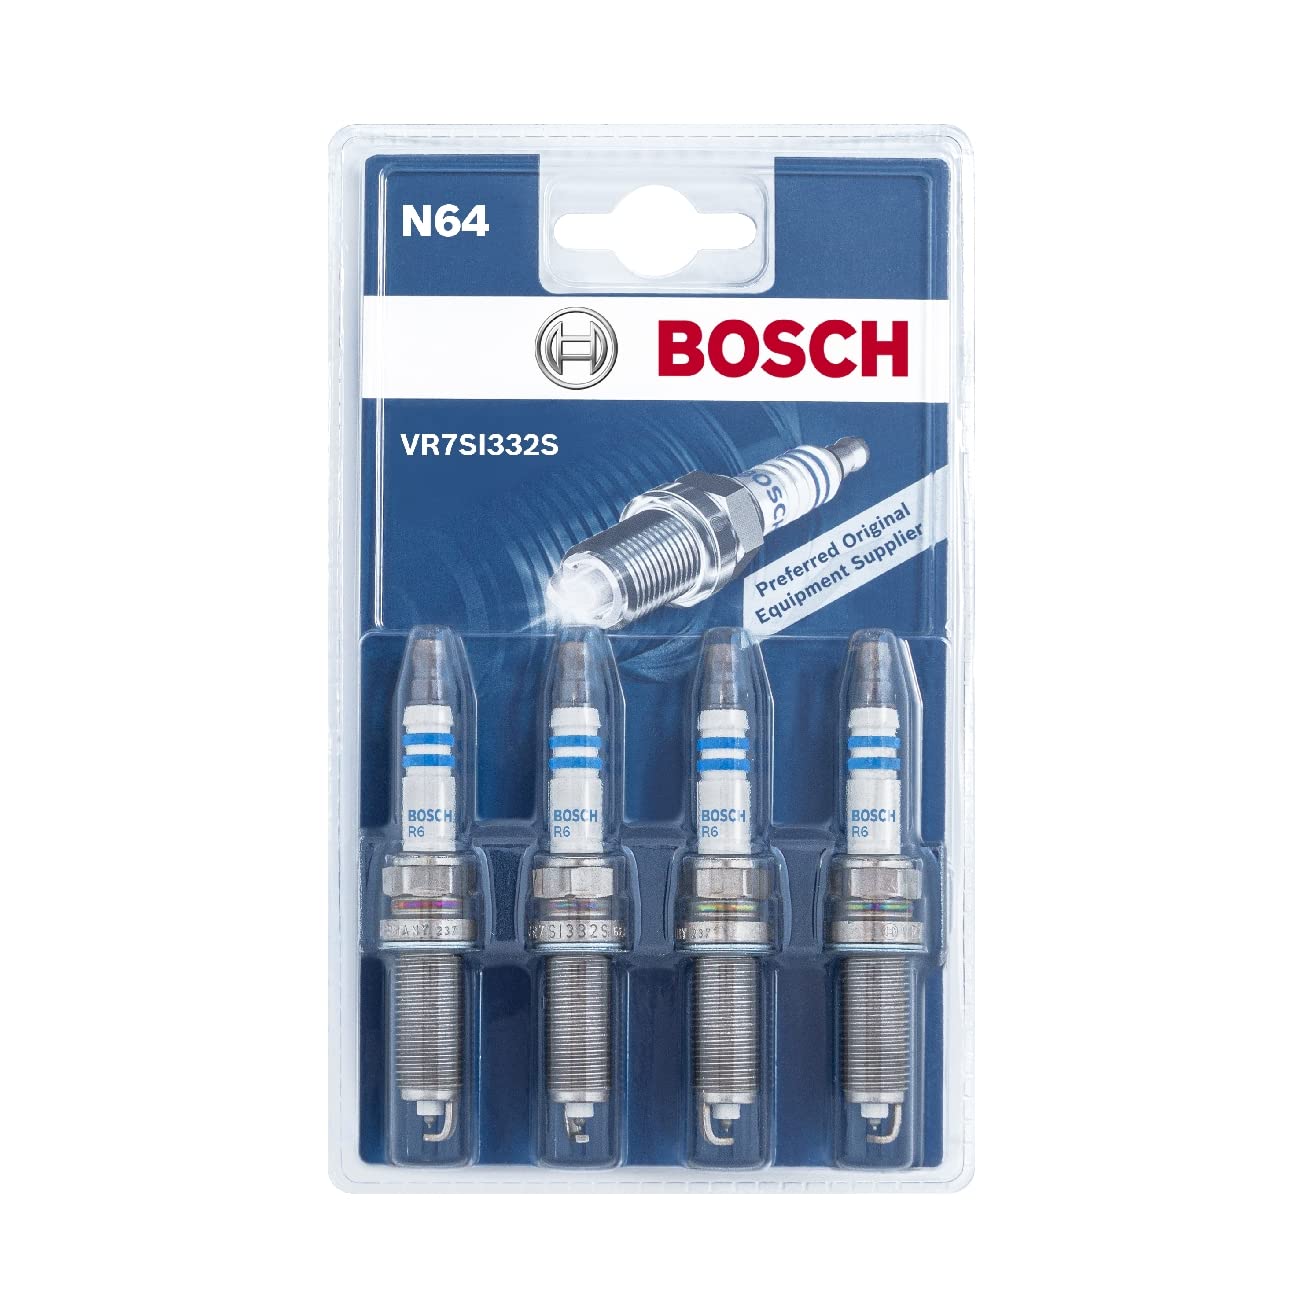 Bosch VR7SI332S (N64) - Zündkerzen Double Iridium - 4er Set von Bosch Automotive